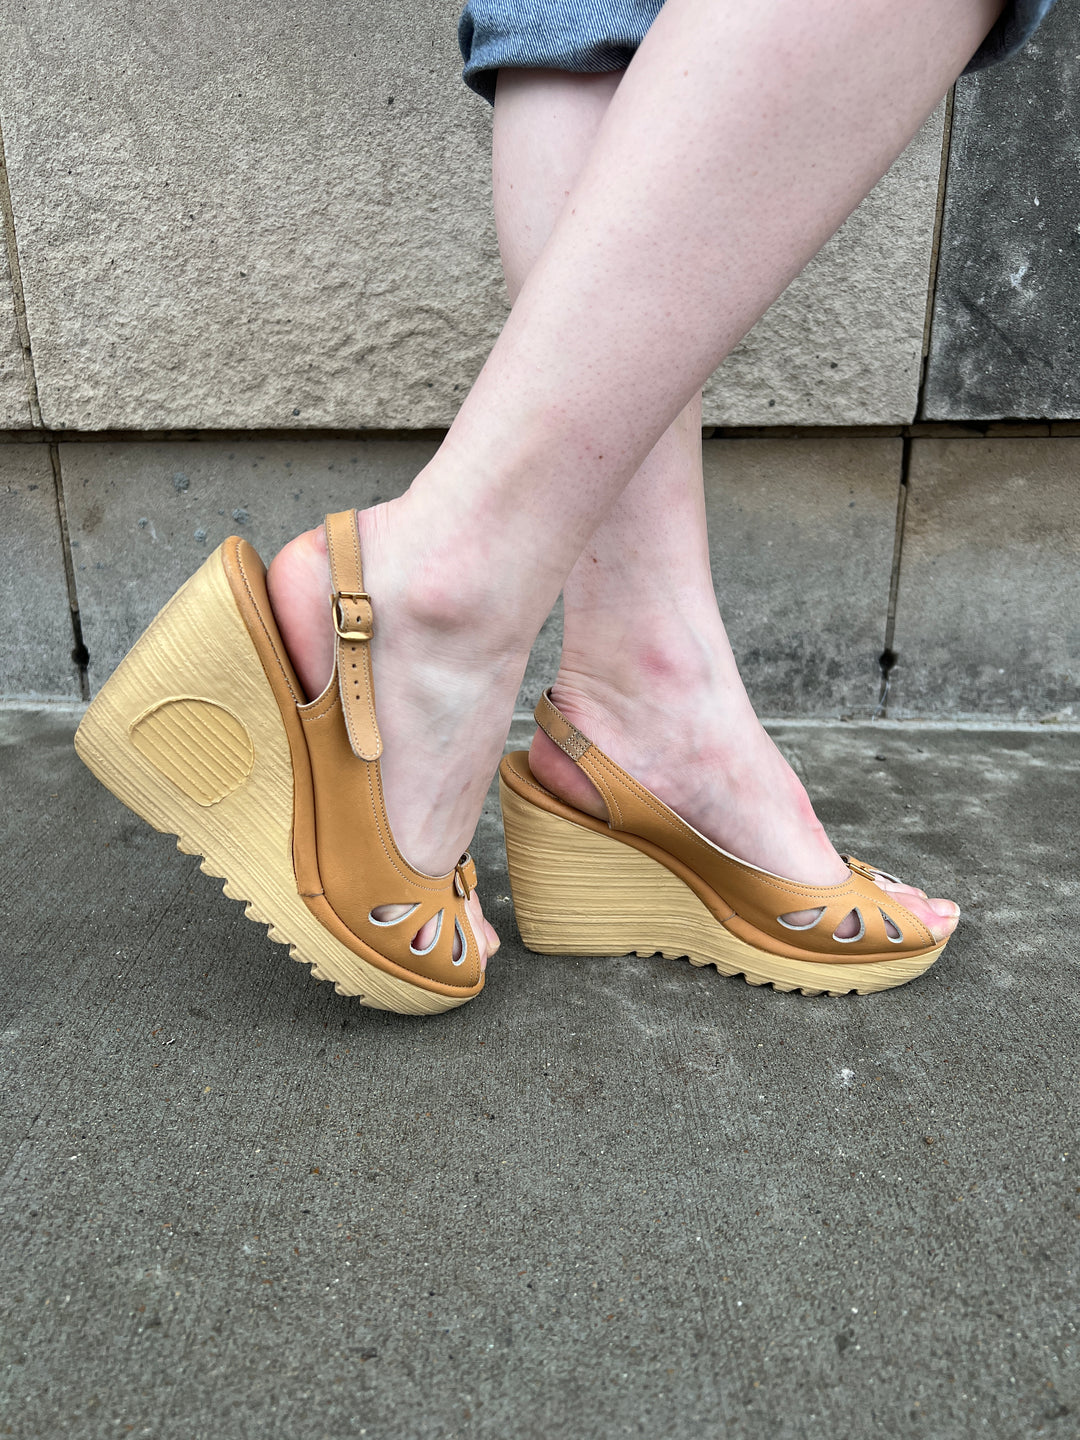 70s Tan Open - Toe Wedge Heel Sandals Cherokee